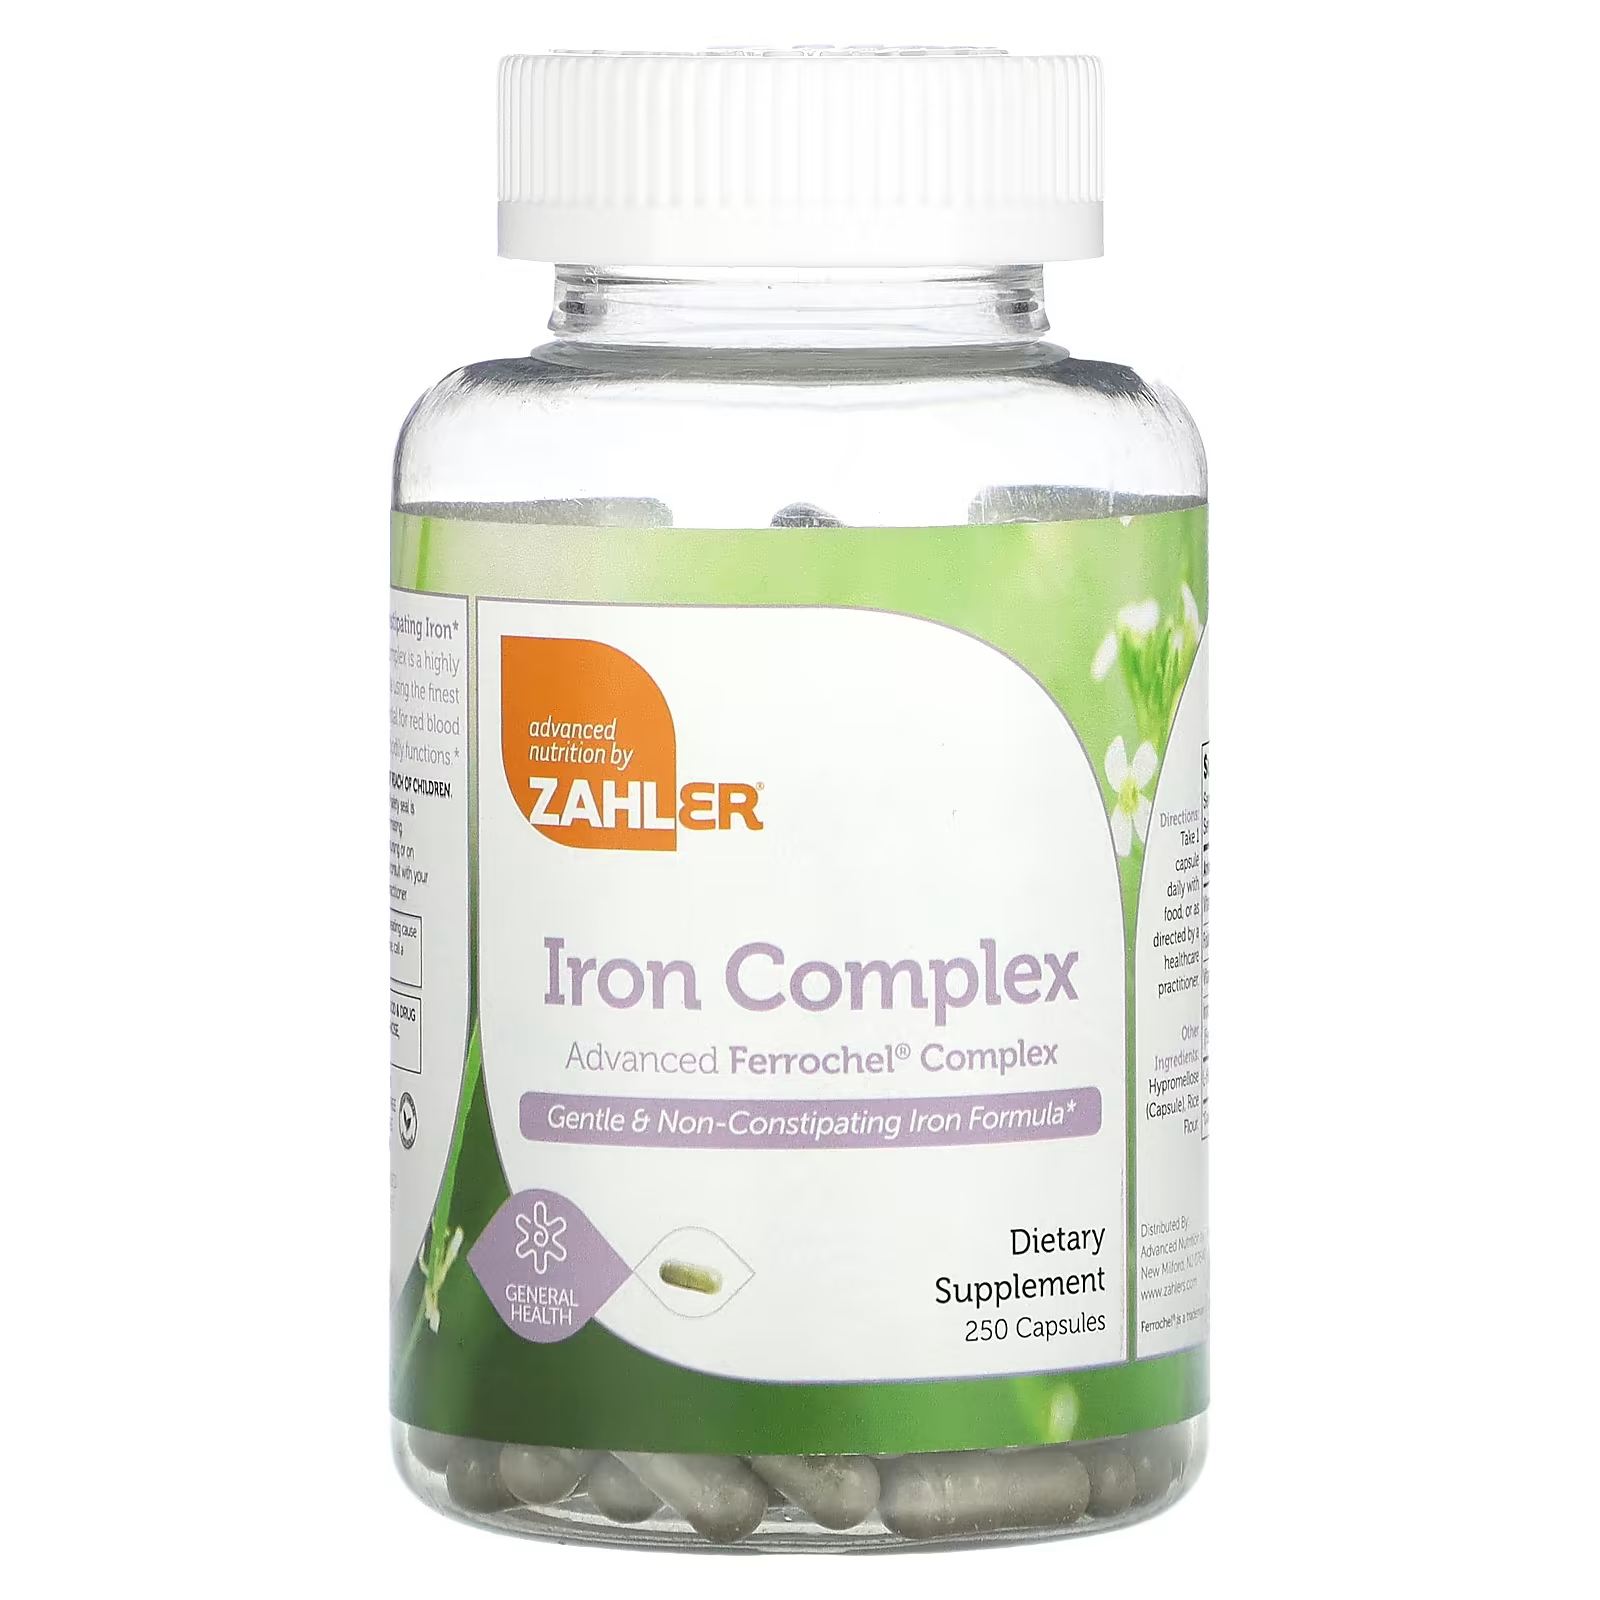 Zahler Iron Complex Мягкая формула железа, не вызывающая запоров, 250 капсул